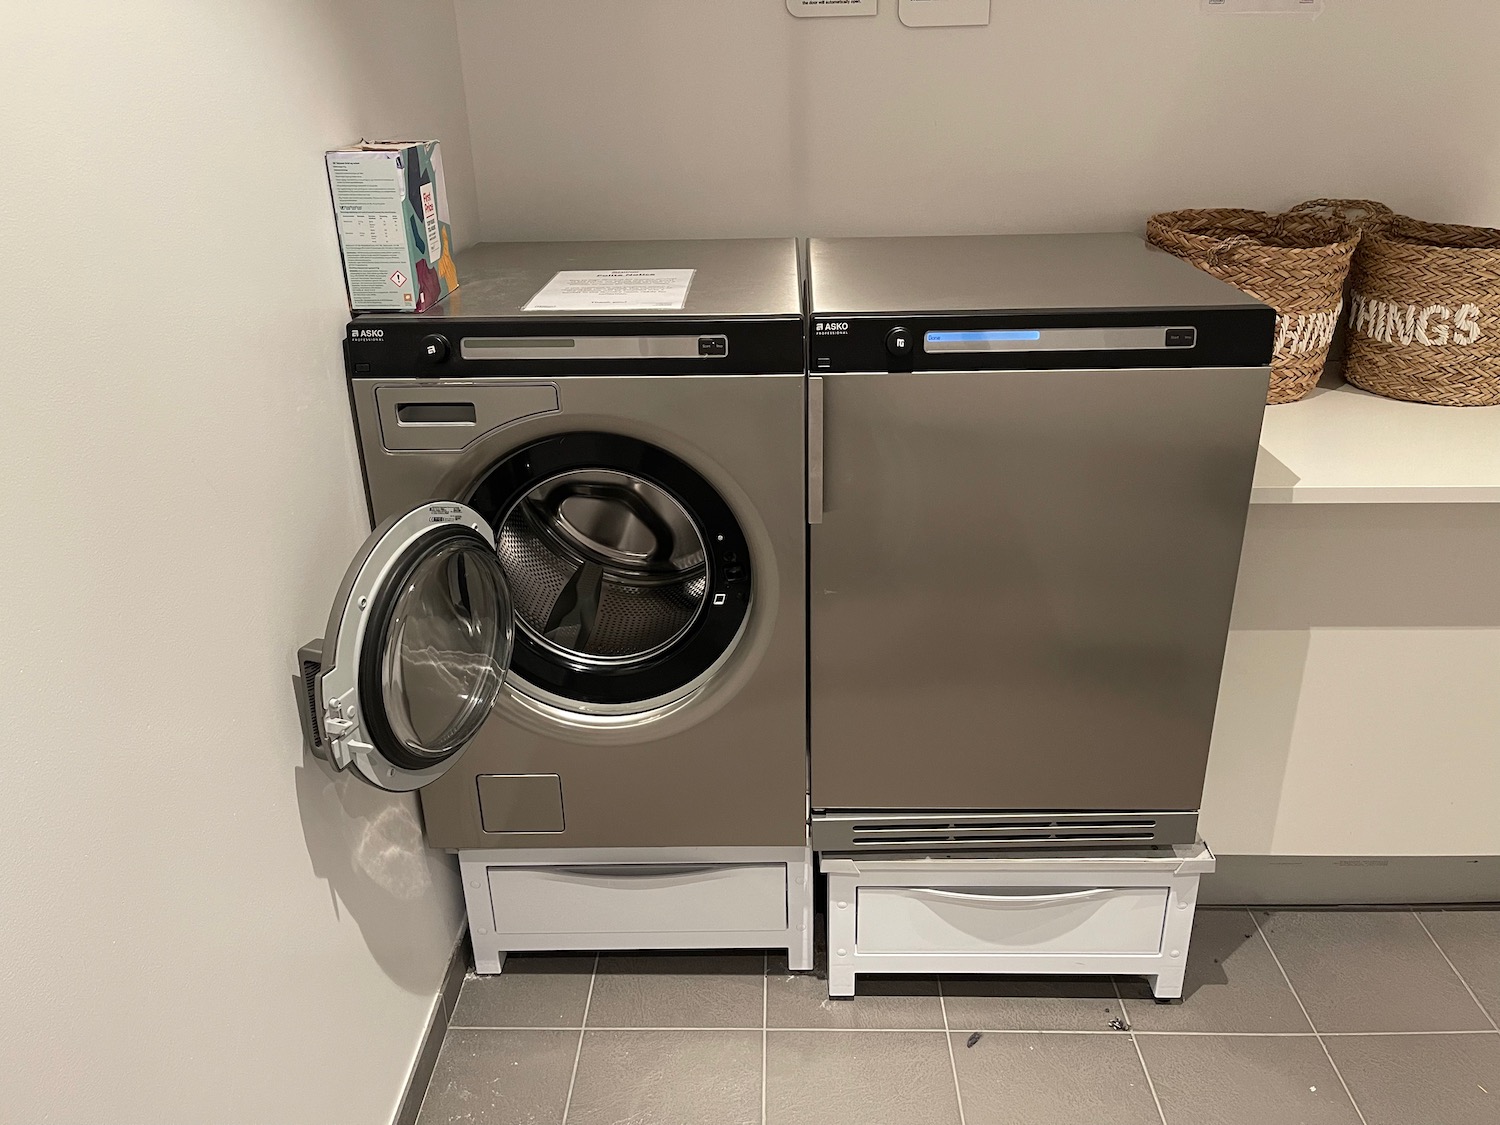 a washing machine and a dishwasher